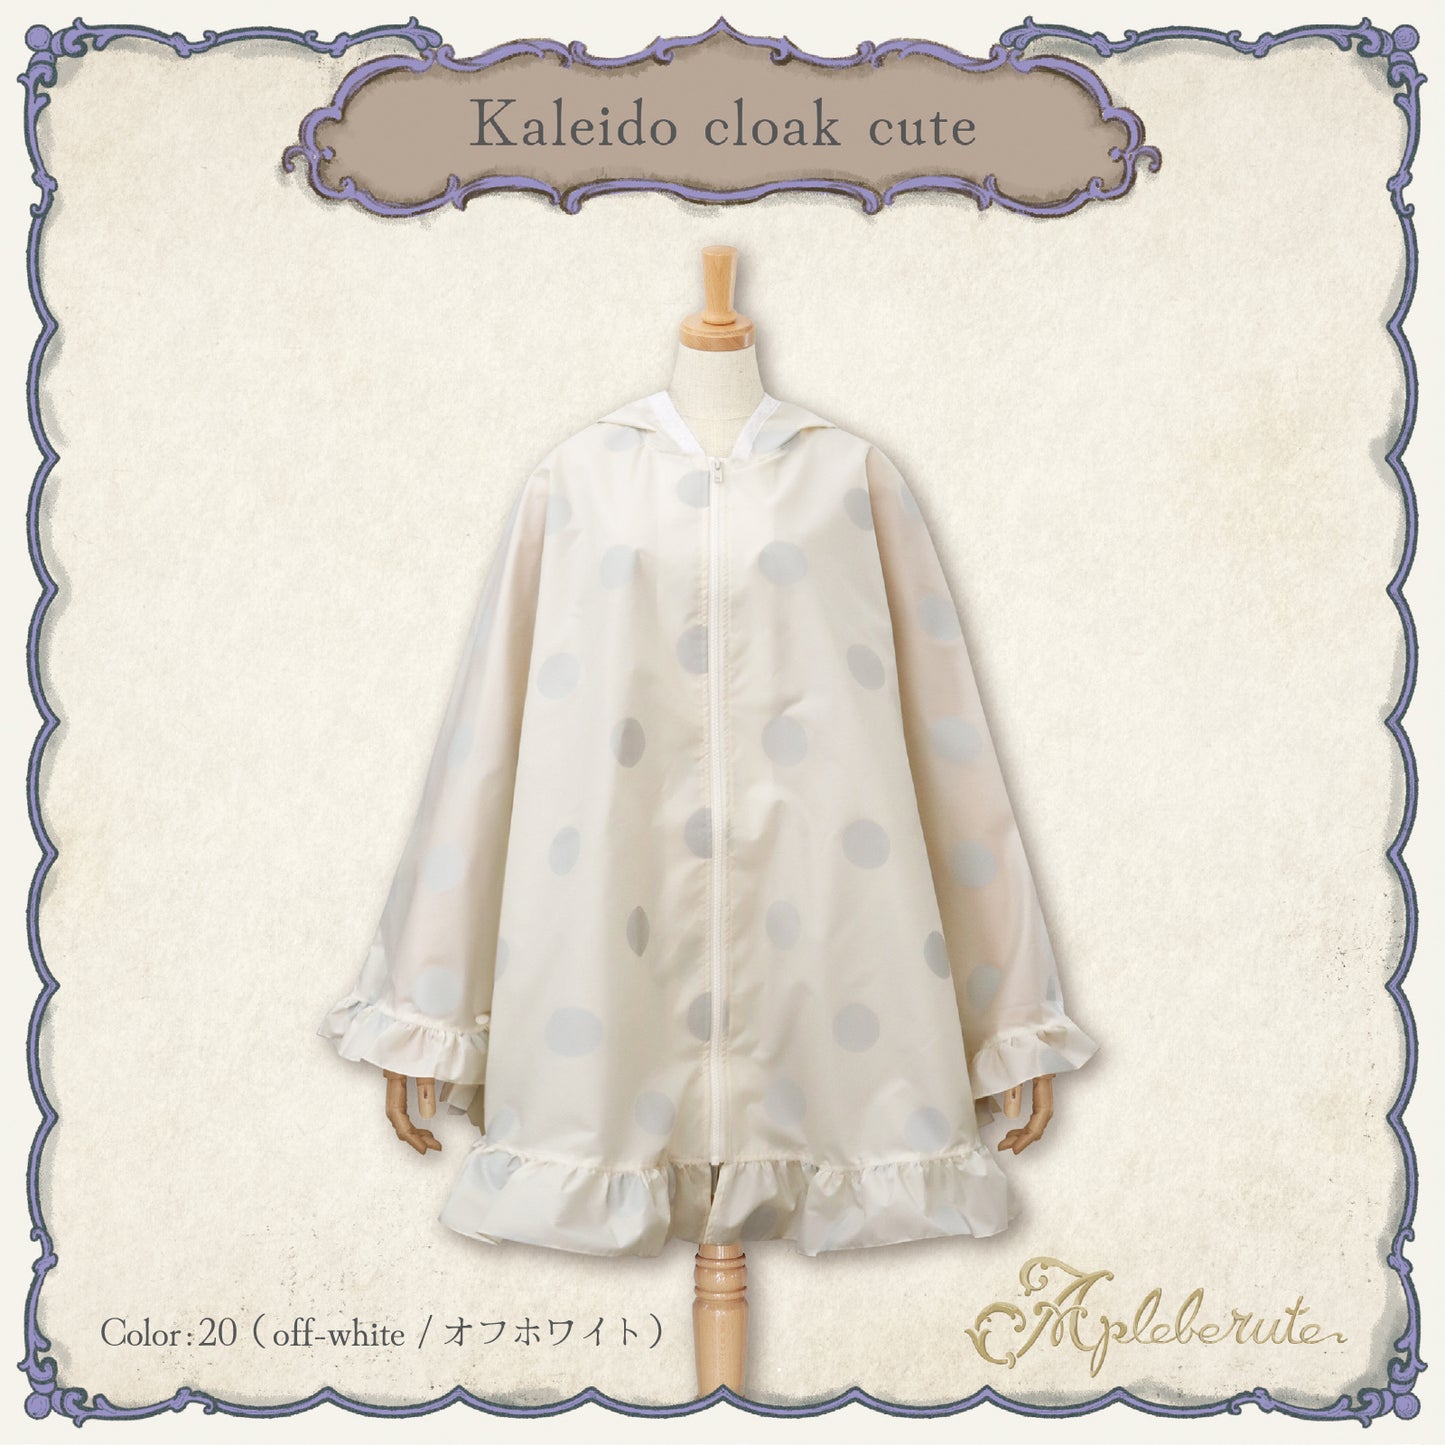 【New】kaleido-cloak-cute (カレイド クローク キュート) - ポンチョ レインポンチョ フリル 超撥水 収納ポーチ付き